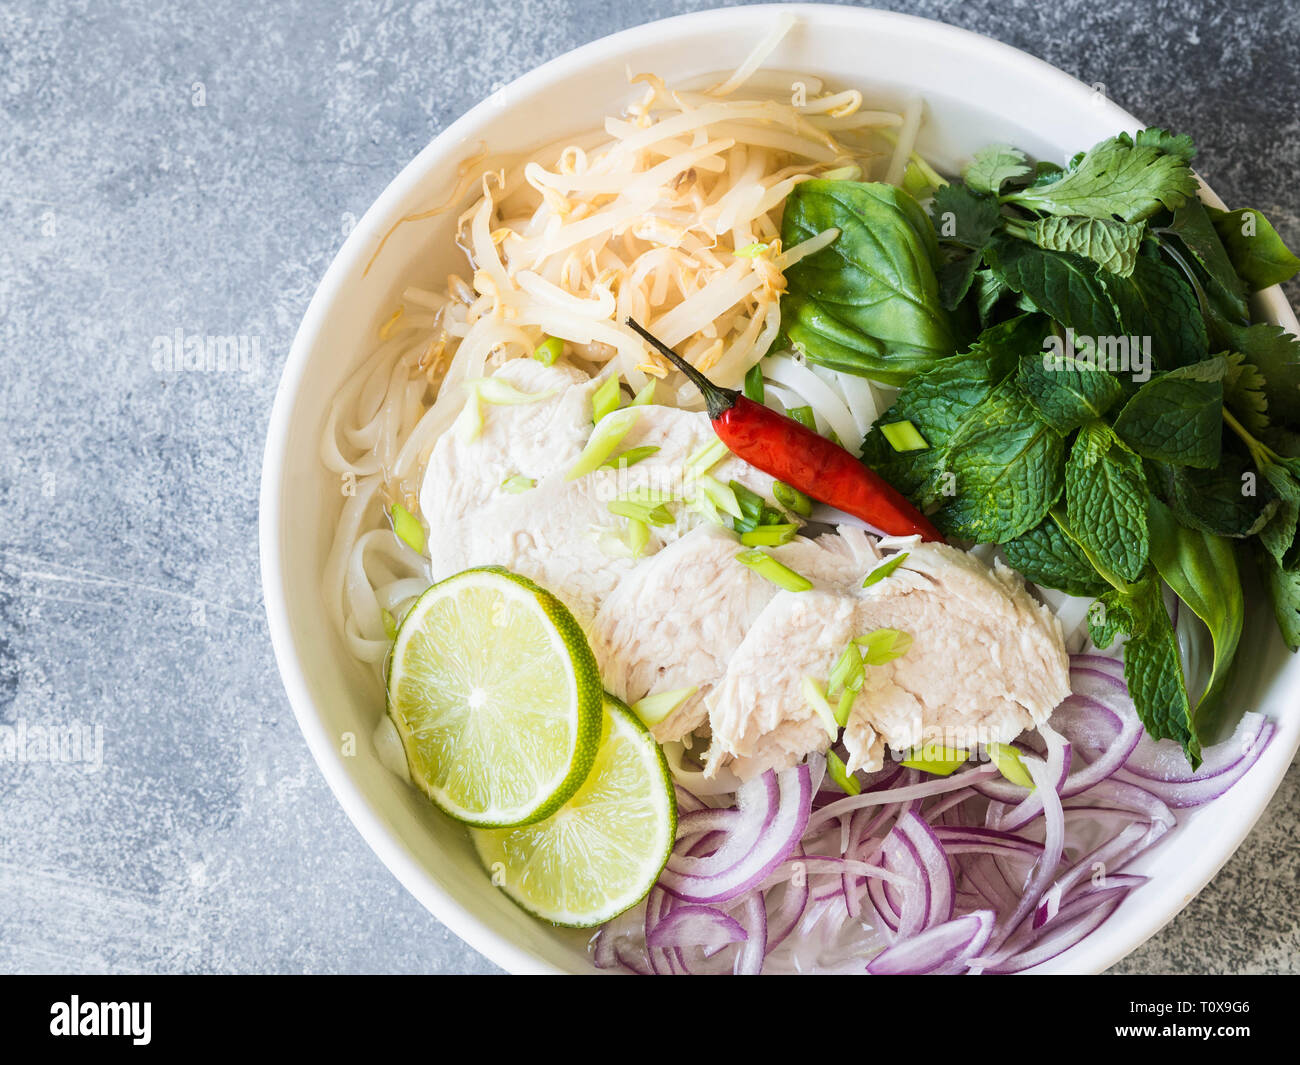 Tradizionale zuppa vietnamita- pho ga in bianco ciotola con pollo e riso tagliatelle, menta e coriandolo, verde e rosso cipolla, peperoncino, i germogli di soia e calce Foto Stock